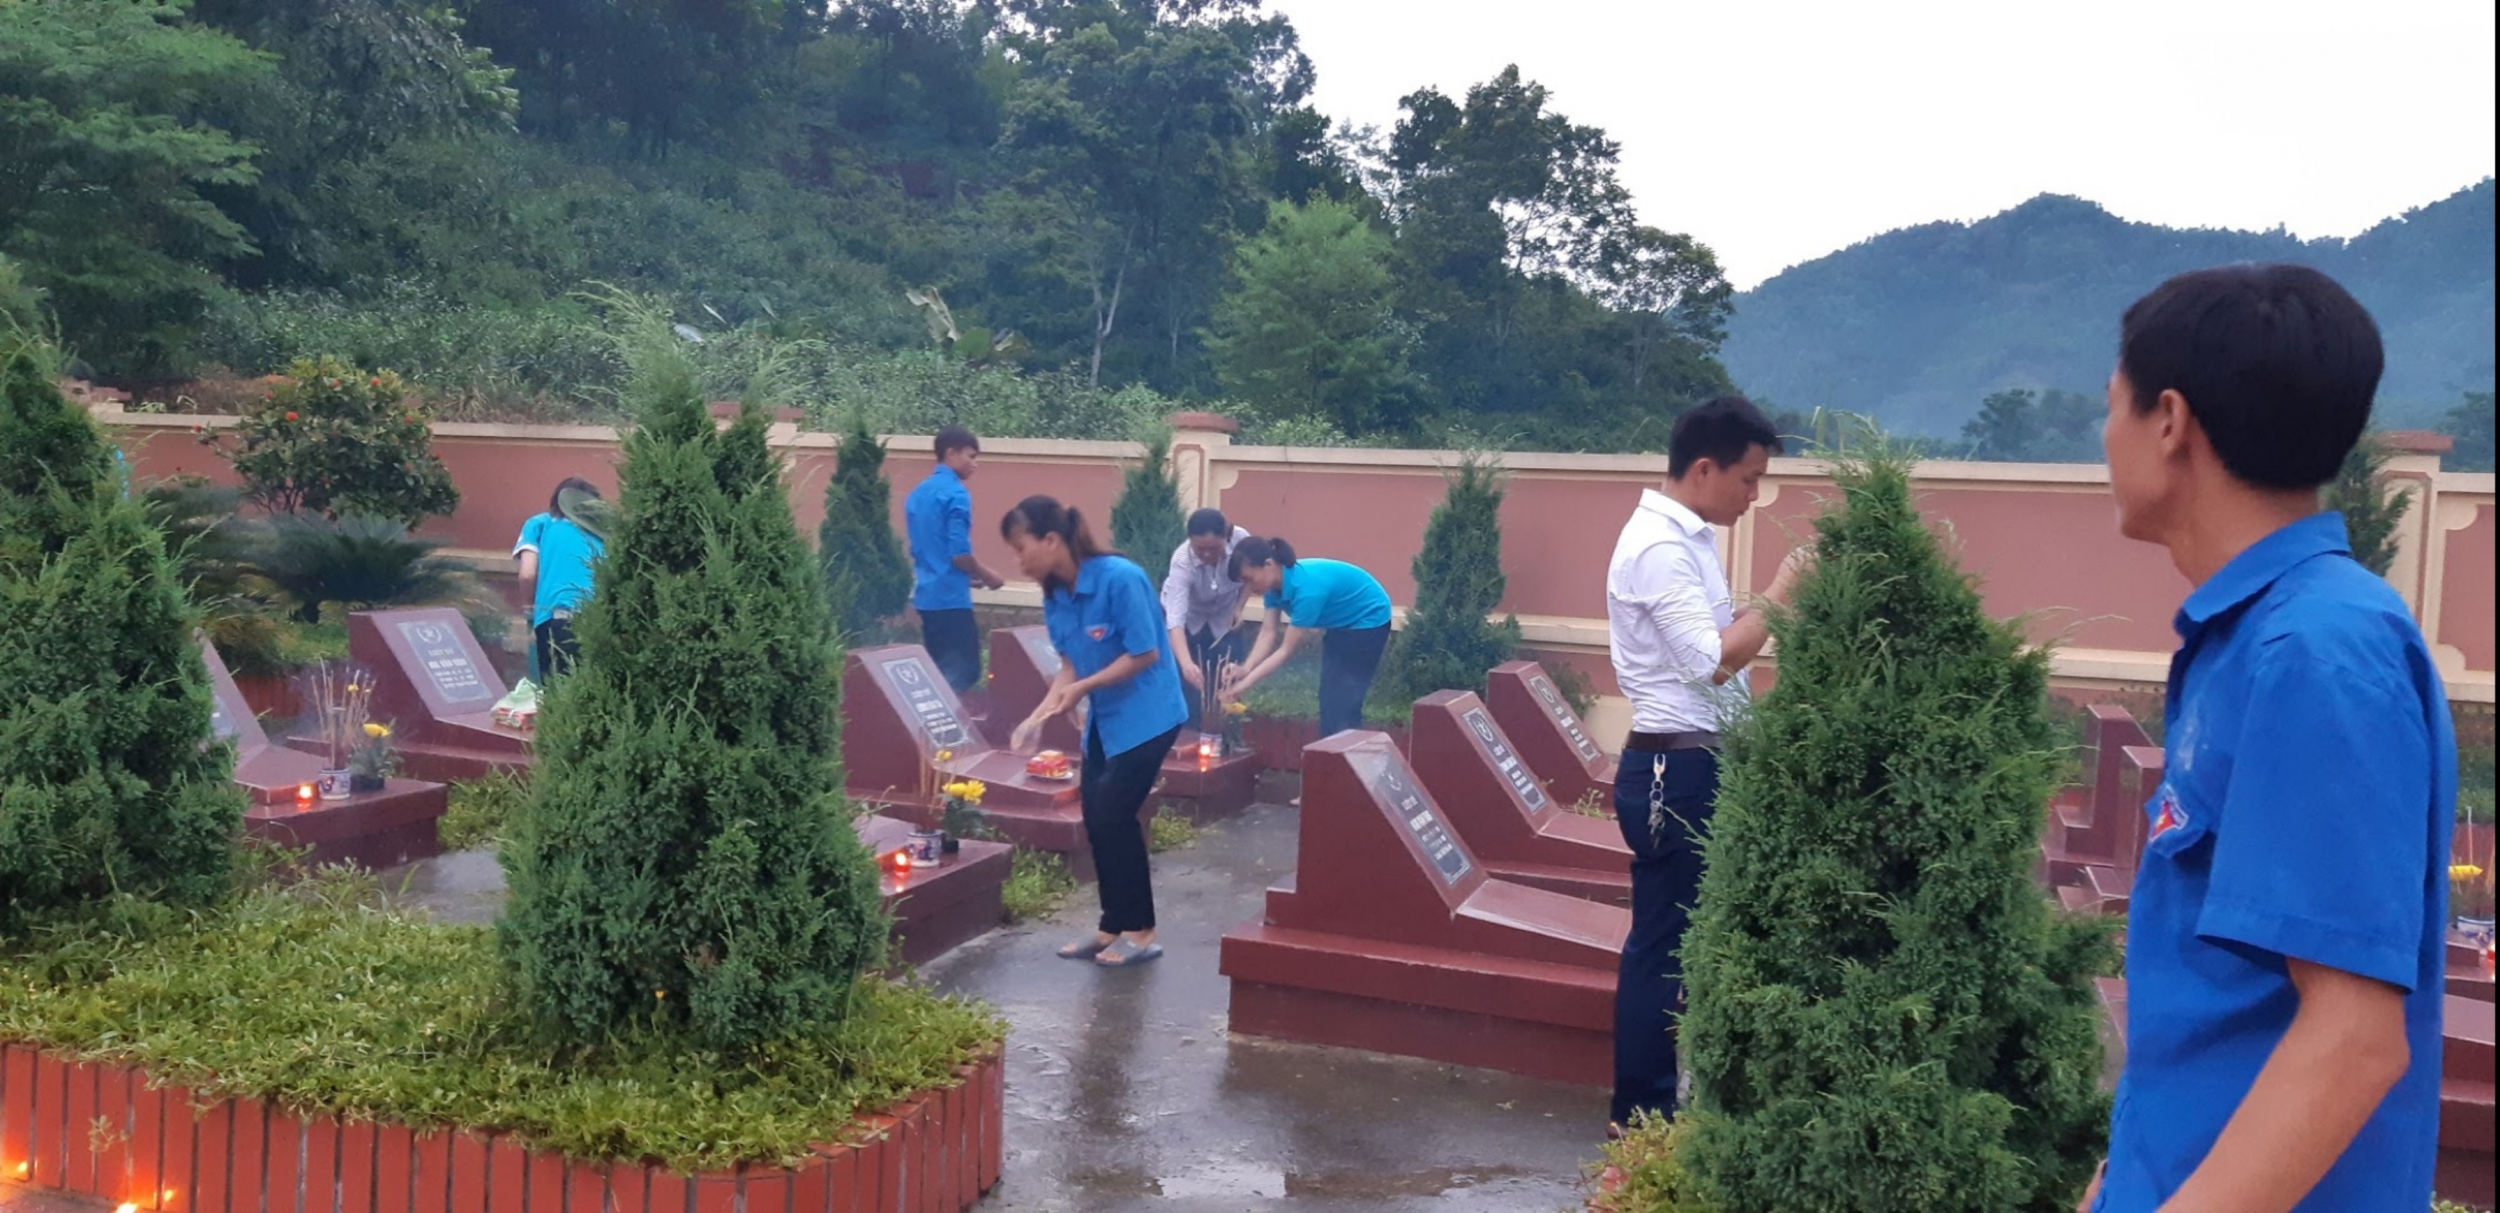 Hội Cựu chiến binh Tập đoàn với công tác "uống nước nhớ nguồn" tại Thái Nguyên